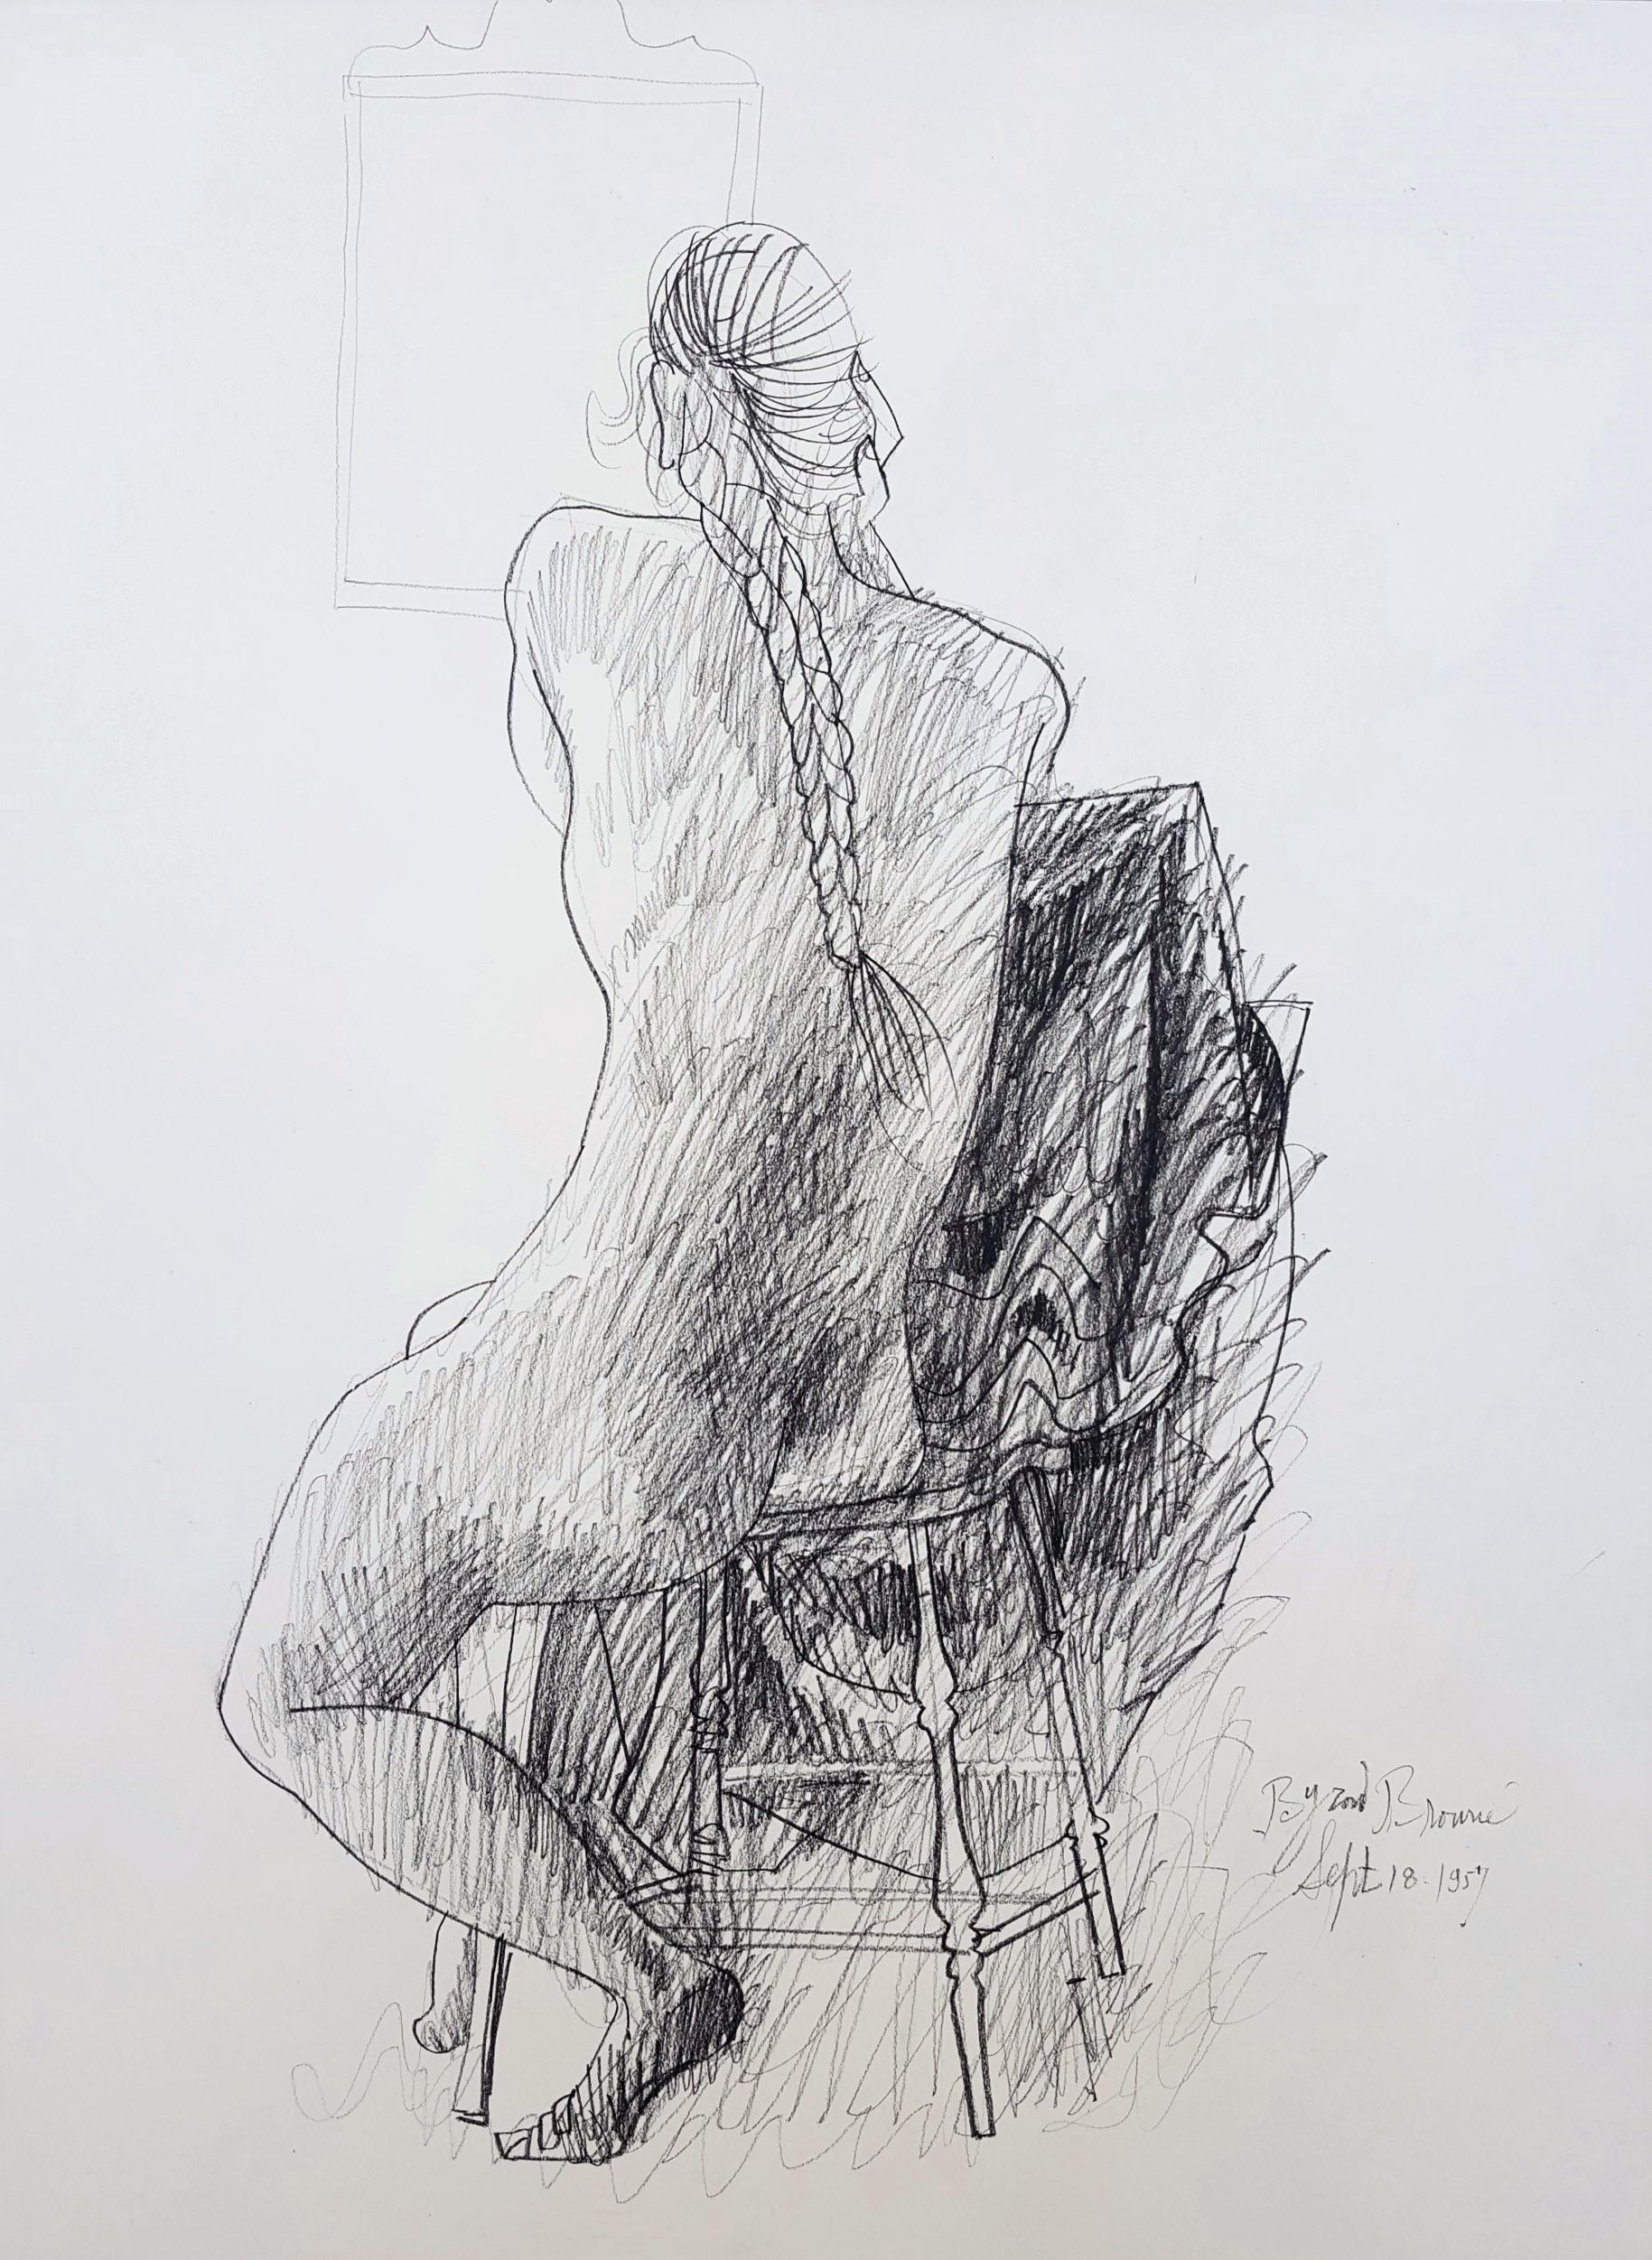 Artistics : Byron Browne (américain, 1907-1961)
Titre : "Nu assis avec miroir".
*Signé et daté par Browne au crayon en bas à droite
Année : 1957
Support : Dessin original au crayon graphite sur papier vélin blanc sans marque.
Encadrement : Non